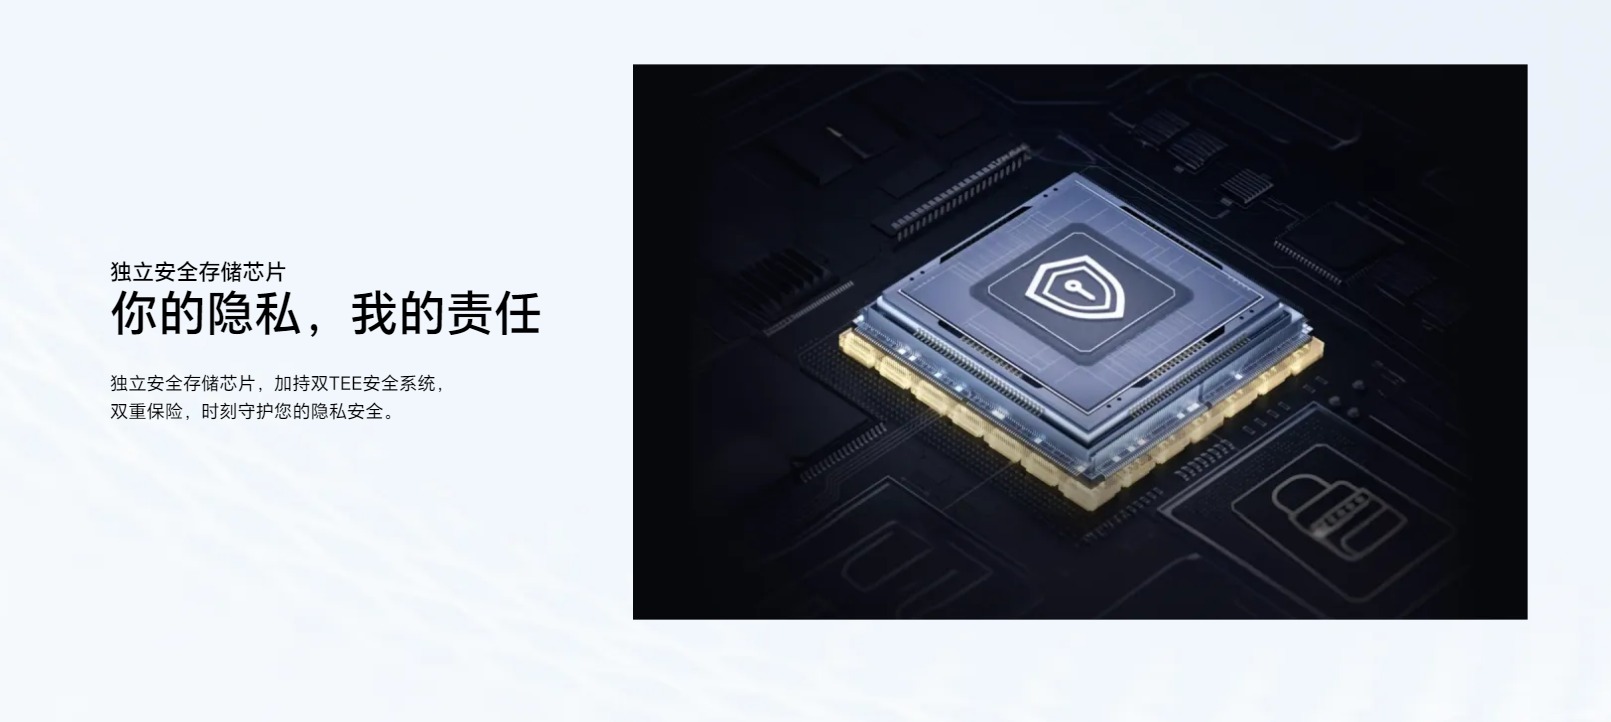 Honor Magic Vs3 có hệ thống chip kép bao gồm chip RF tăng cường khả năng kết nối và chip bảo mật riêng biệt giúp bảo vệ thông tin cá nhân tối ưu (Ảnh: Internet)